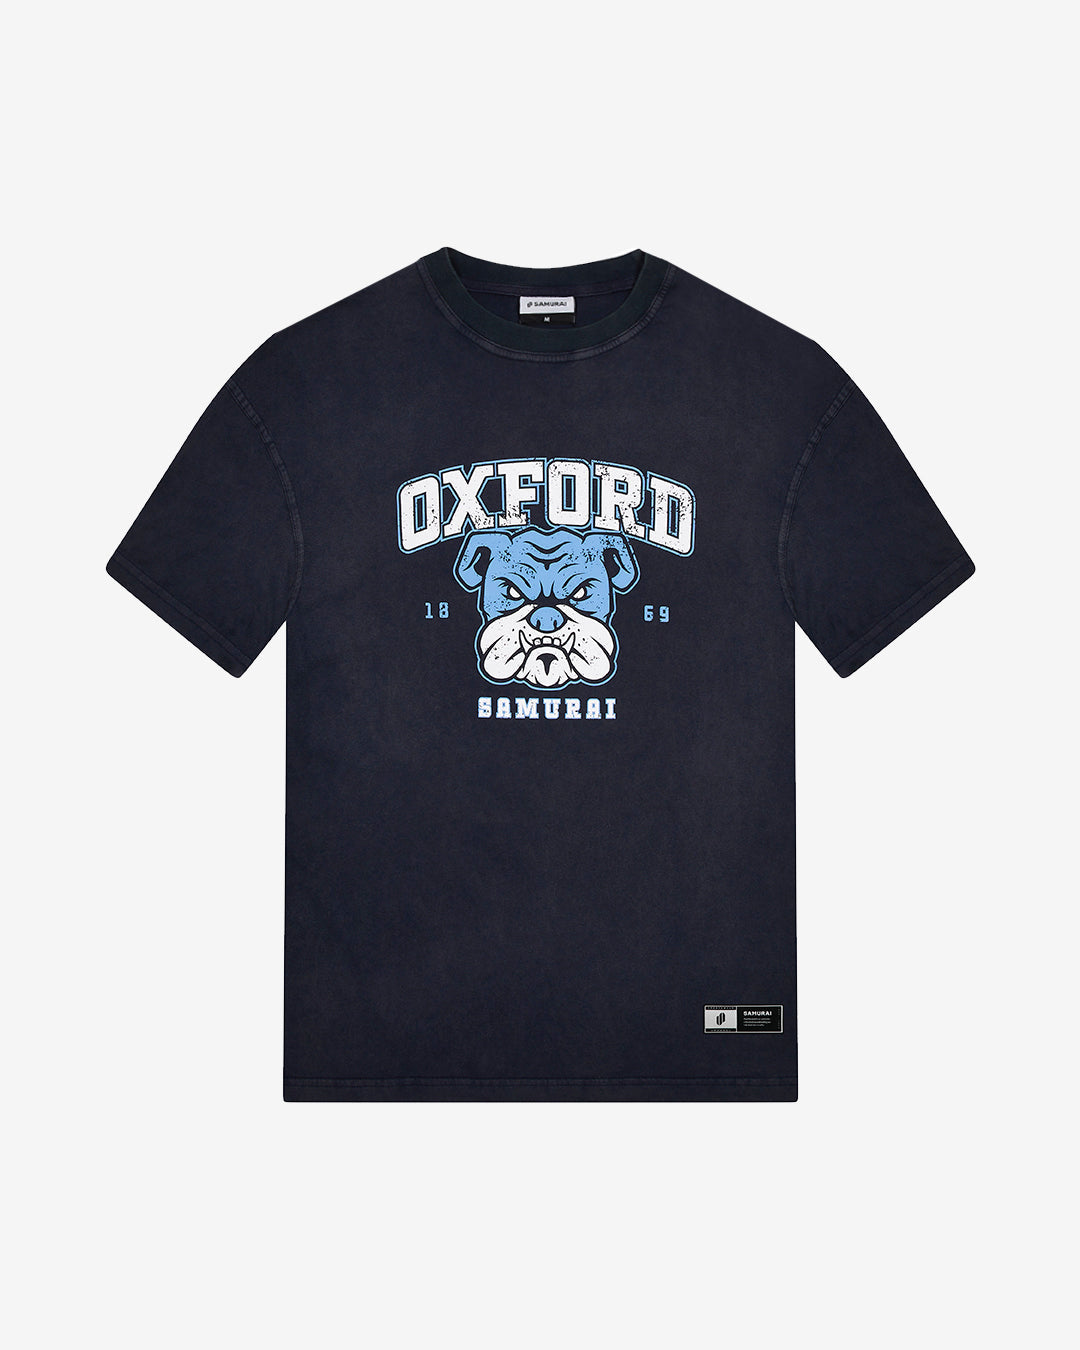 OC: 00-14 - Women's Oxford T-Shirt - Navy